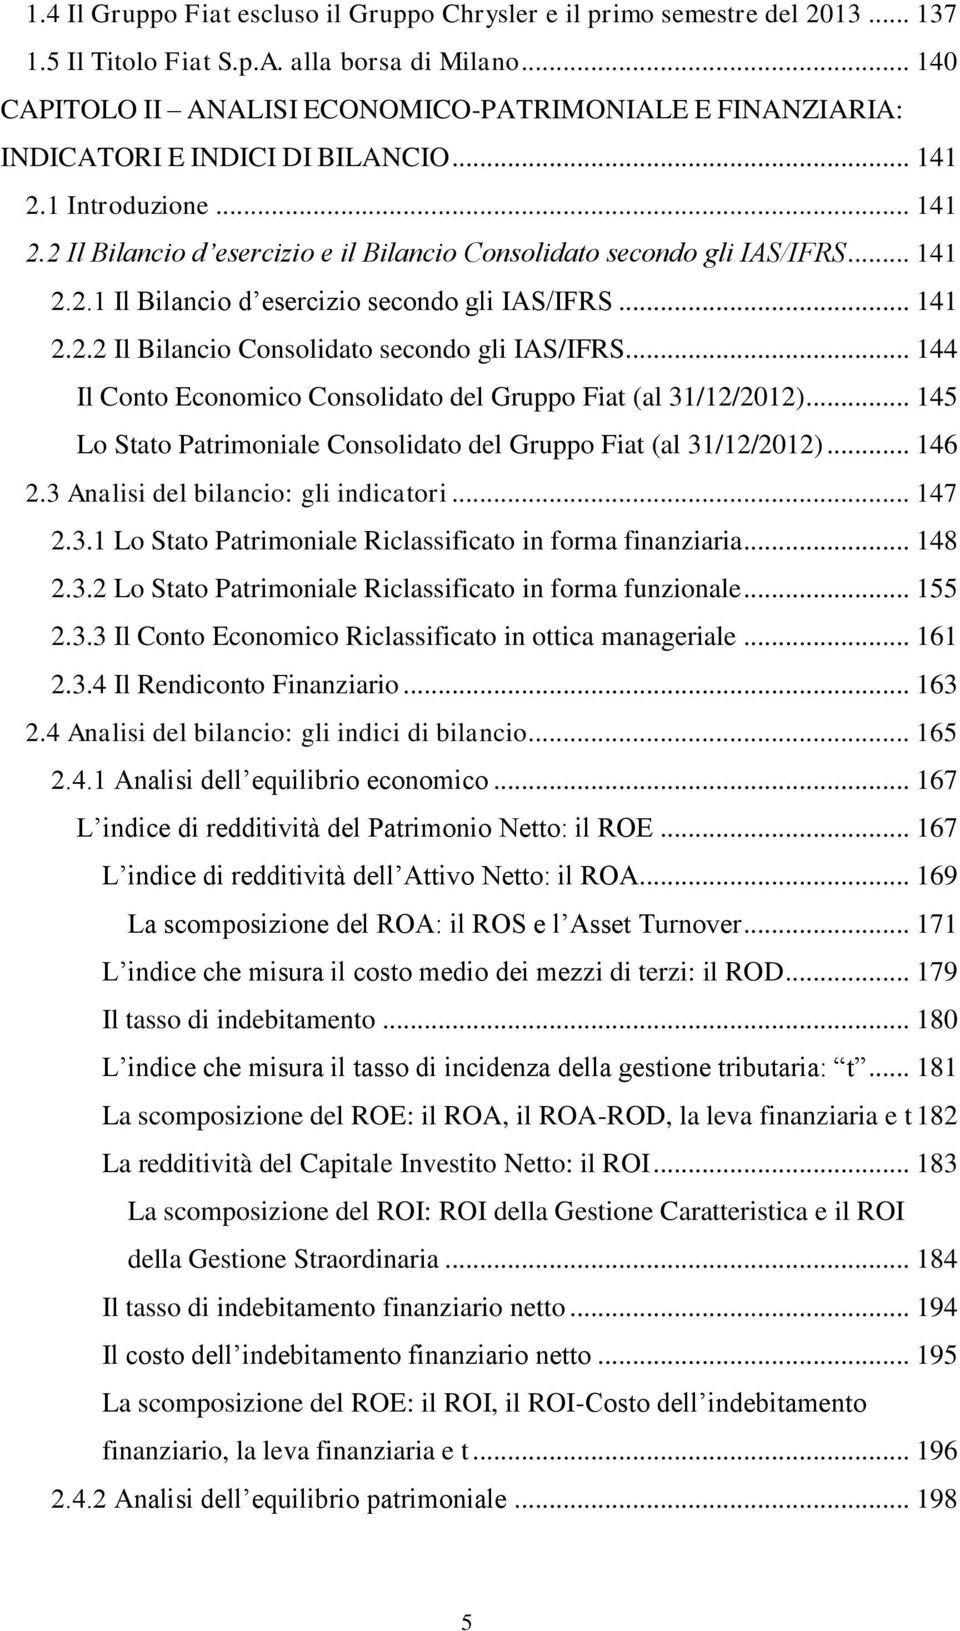 .. 141 2.2.1 Il Bilancio d esercizio secondo gli IAS/IFRS... 141 2.2.2 Il Bilancio Consolidato secondo gli IAS/IFRS... 144 Il Conto Economico Consolidato del Gruppo Fiat (al 31/12/2012).